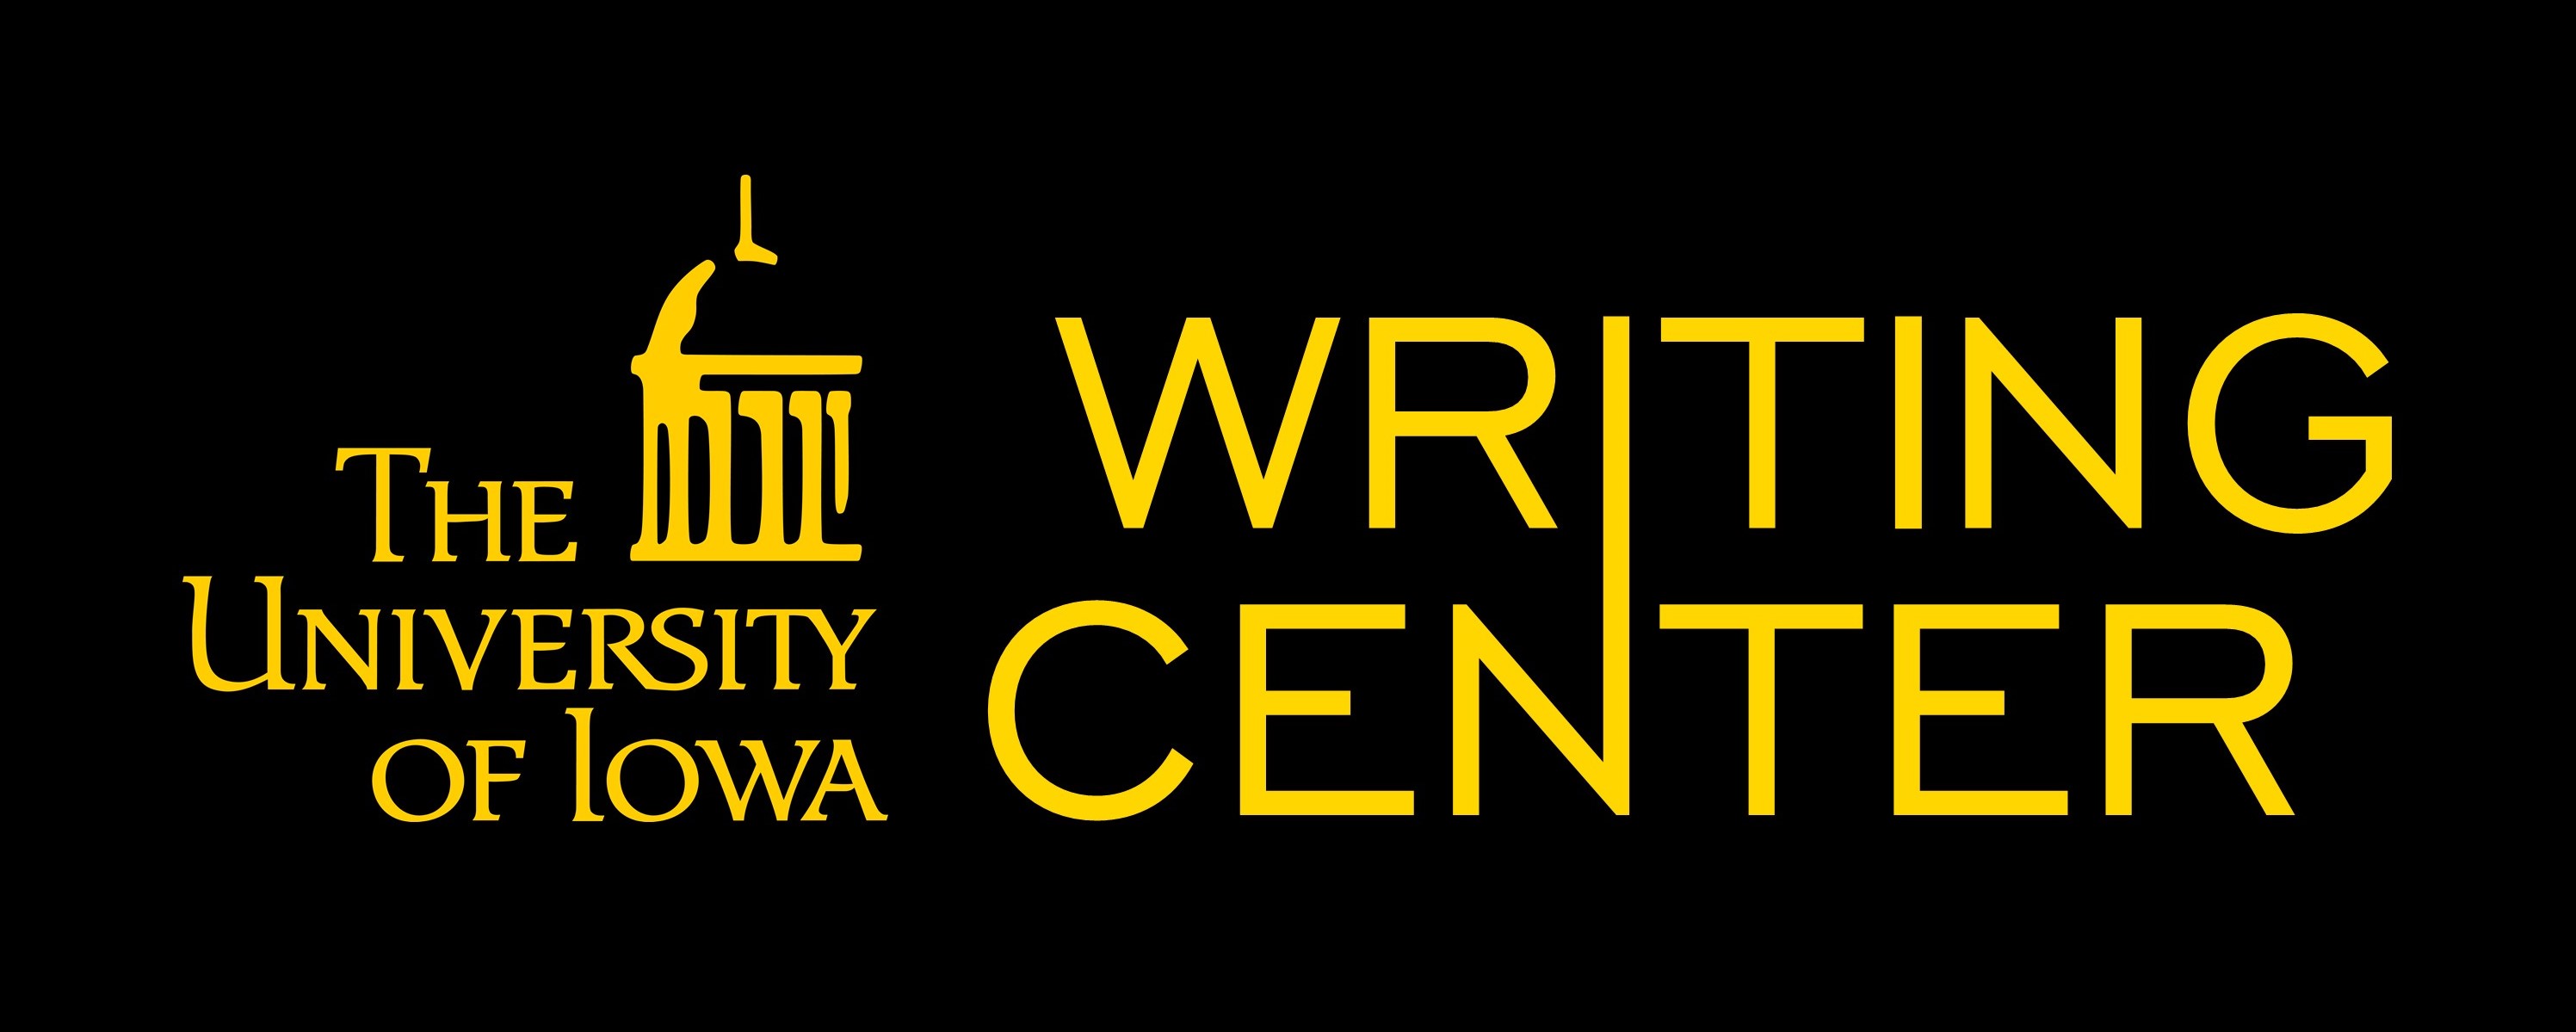 The University of Iowa Writing Center